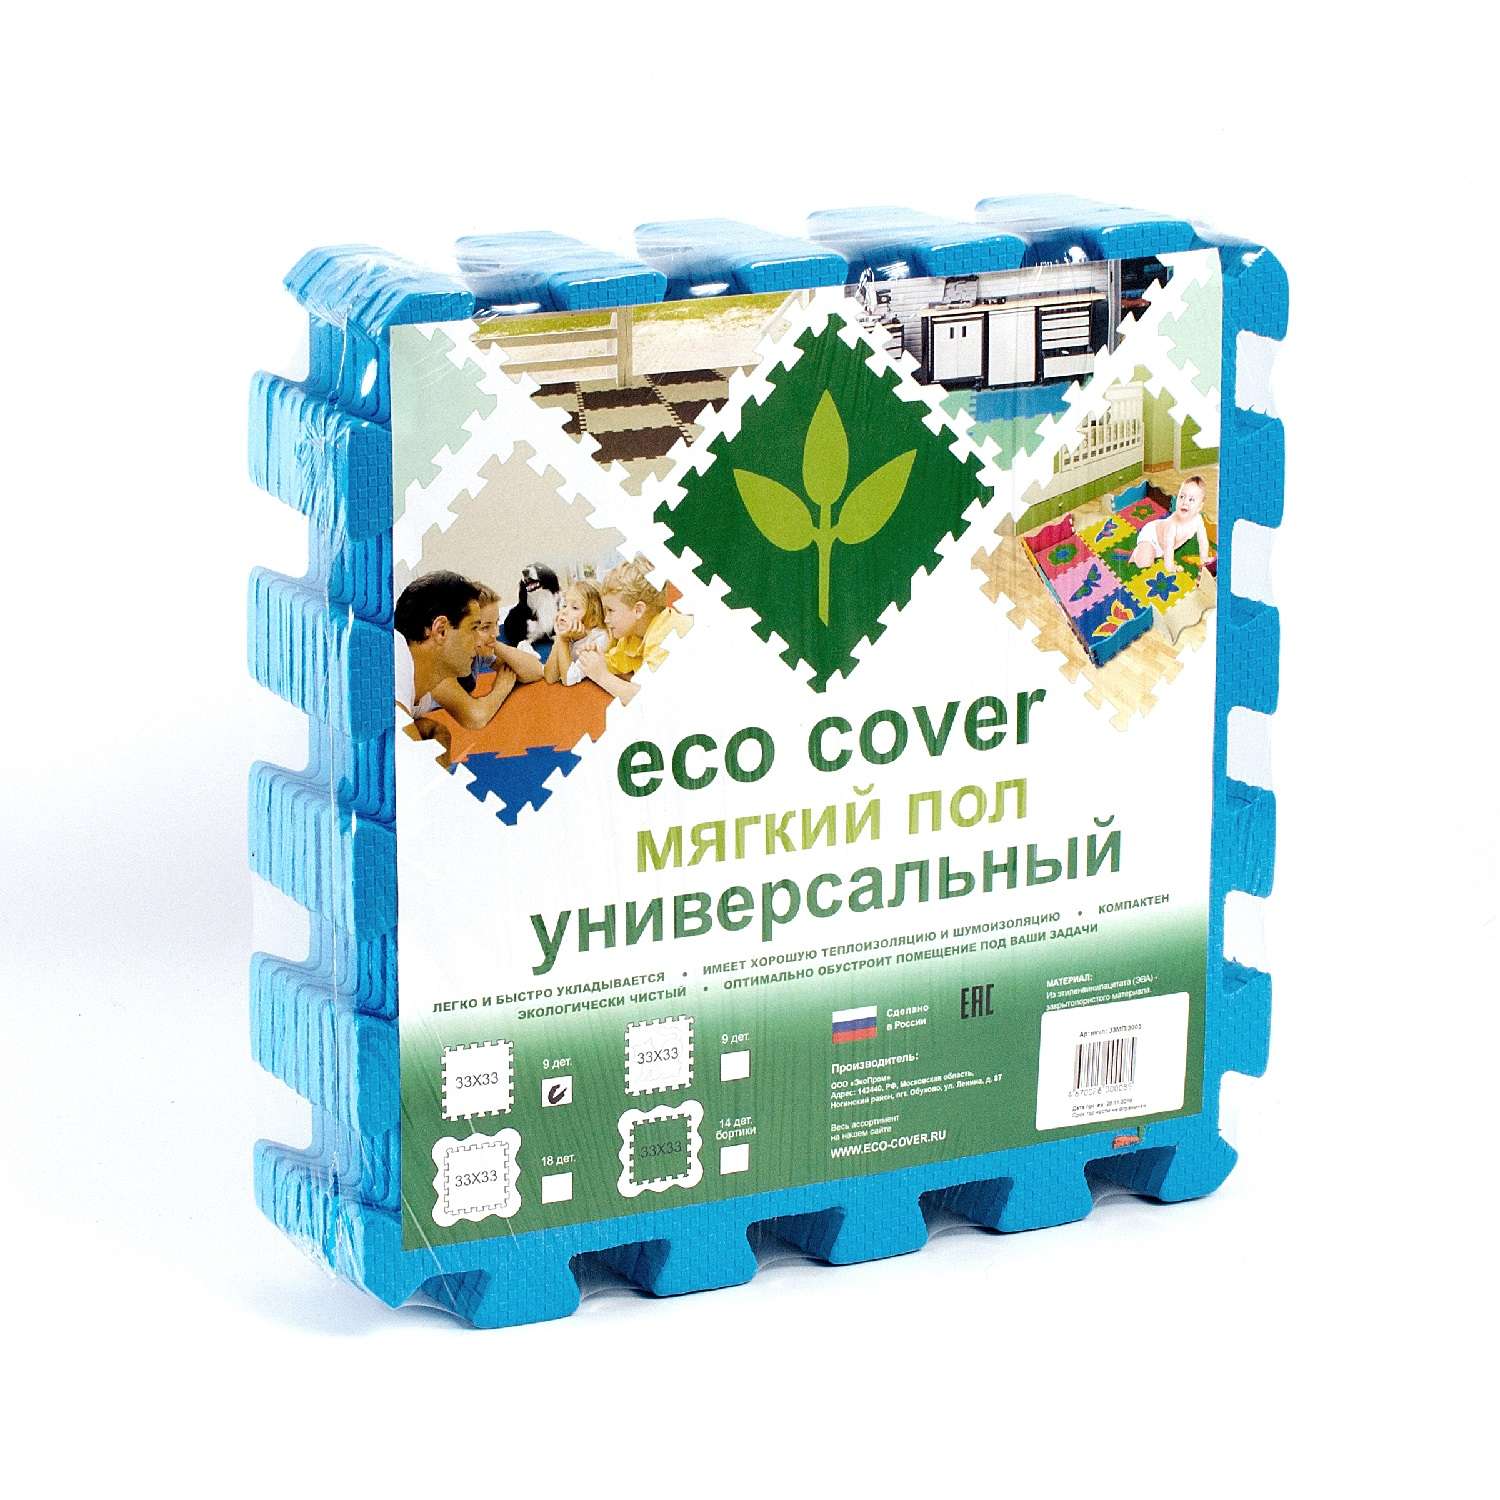 Развивающий детский коврик Eco cover игровой для ползания мягкий пол синий 33х33 - фото 3